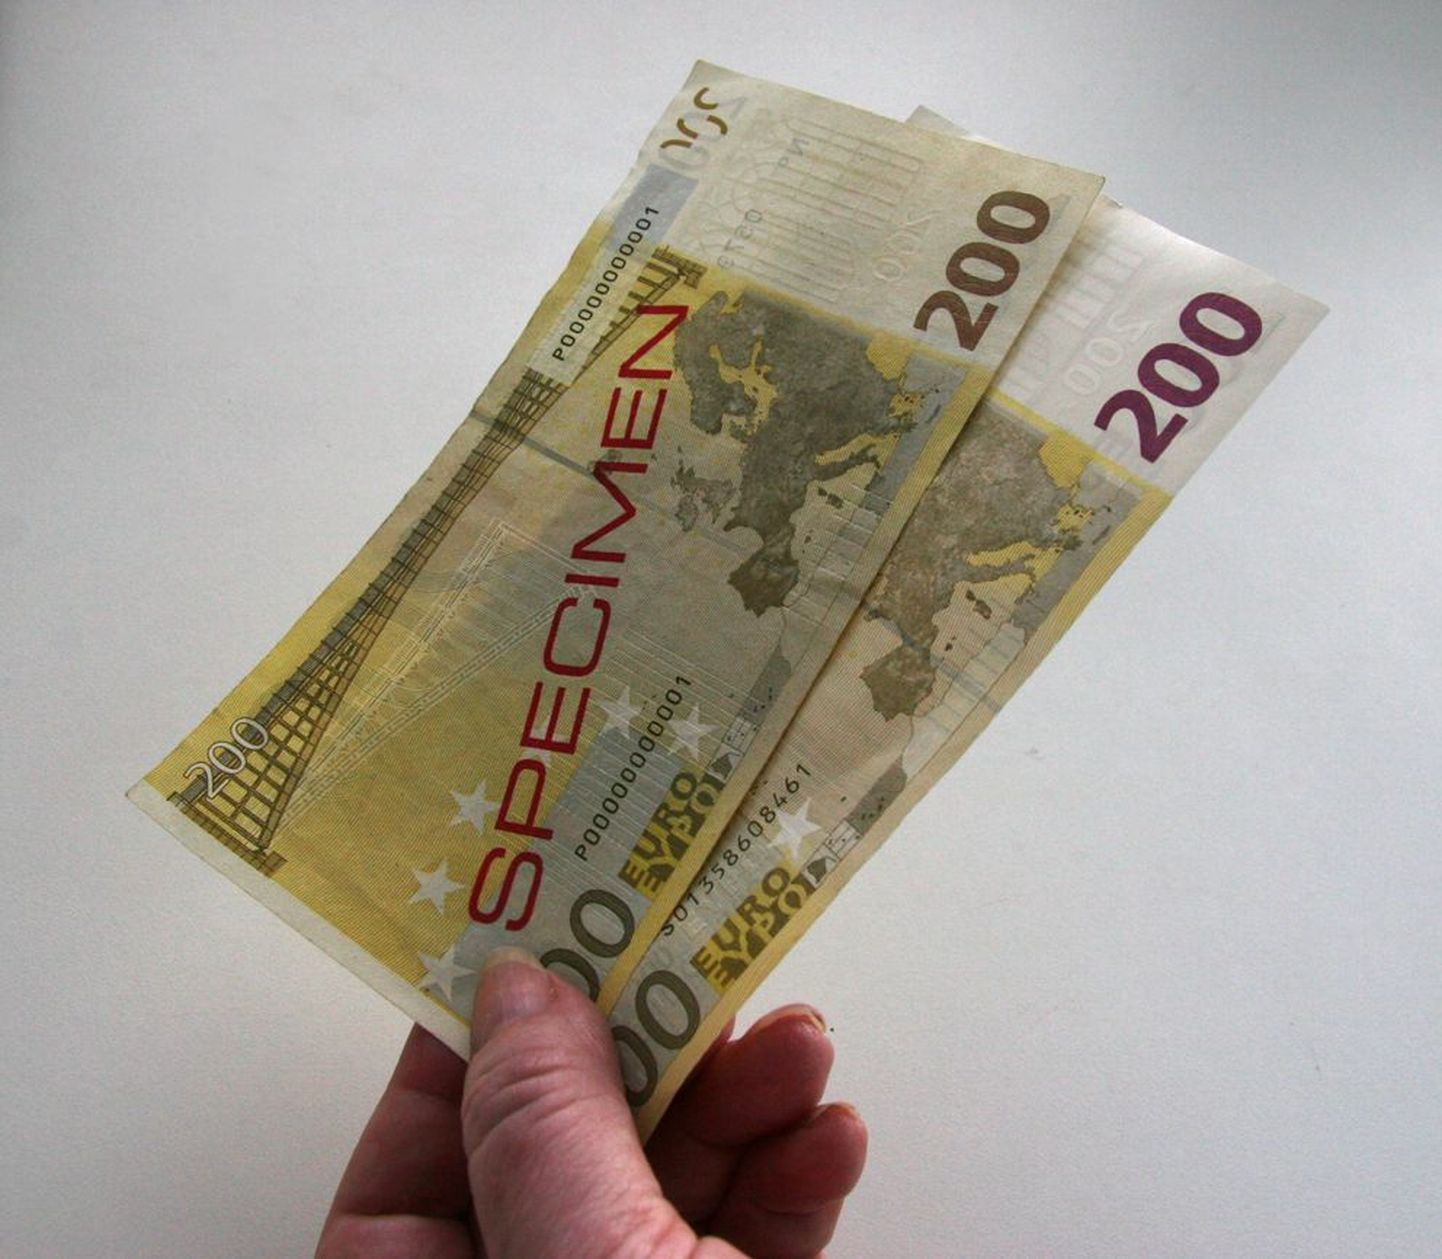 Peal õige ja all võltsitud 200-eurone rahatäht, mis on leitud Soomest.